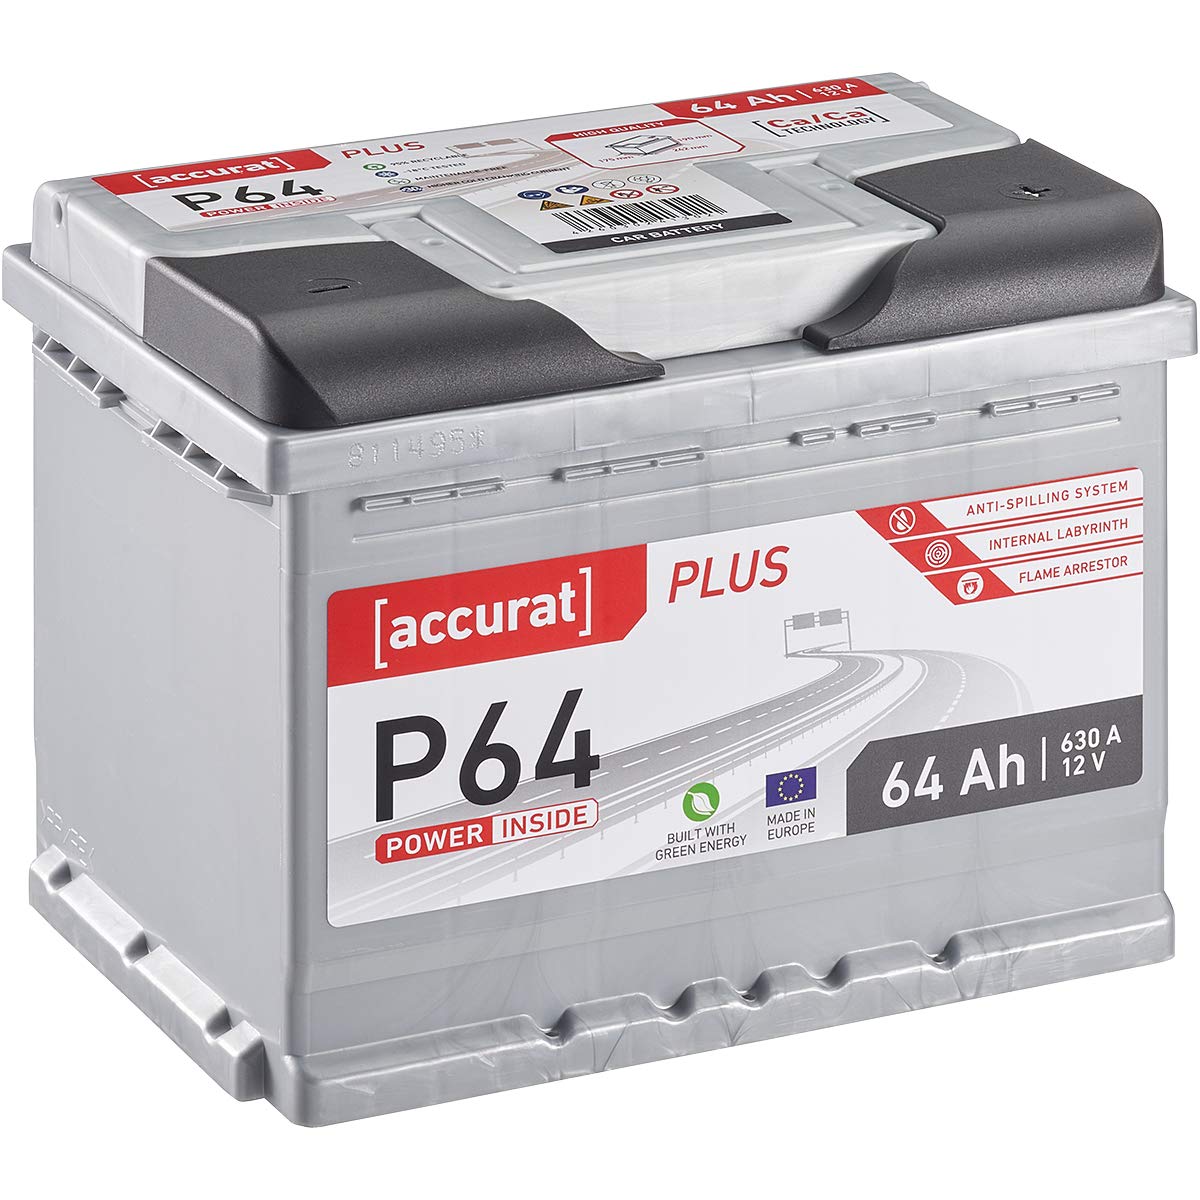 Accurat Plus P64 Autobatterie - 12V, 64Ah, 630A, zyklenfest, wartungsfrei, 35% mehr Startleistung, Ca-Technologie, Kaltstartkraft - Starterbatterie, Nassbatterie, Blei-Säure Batterie